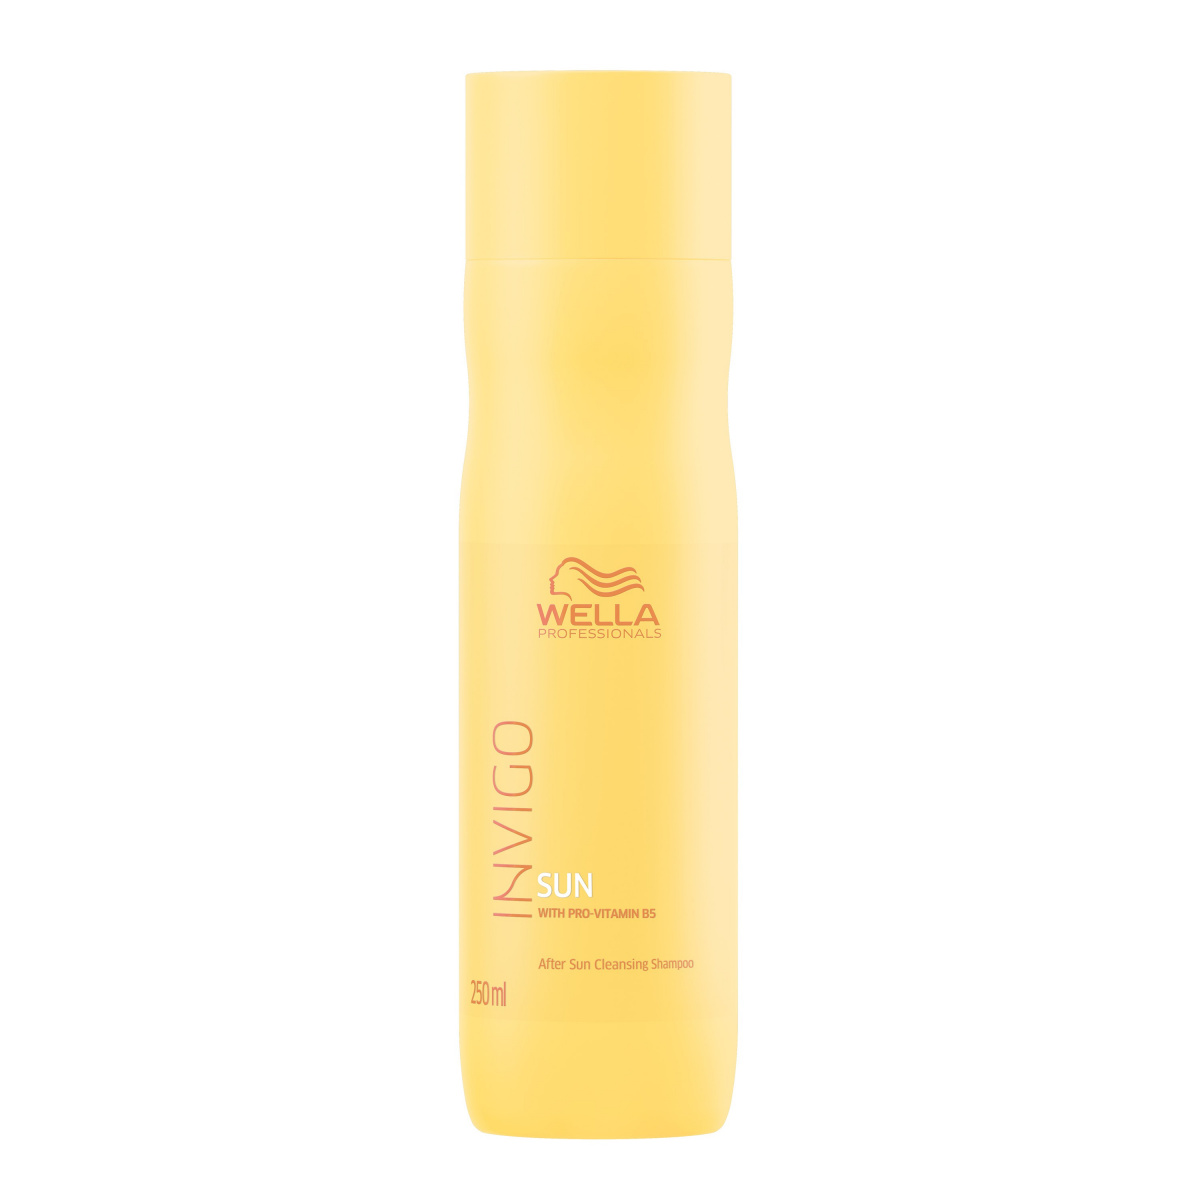 Wella Invigo Sun Hair & Body - Очищающий шампунь для волос и тела после солнца 250 мл Wella Professionals (Германия) купить по цене 1 140 руб.